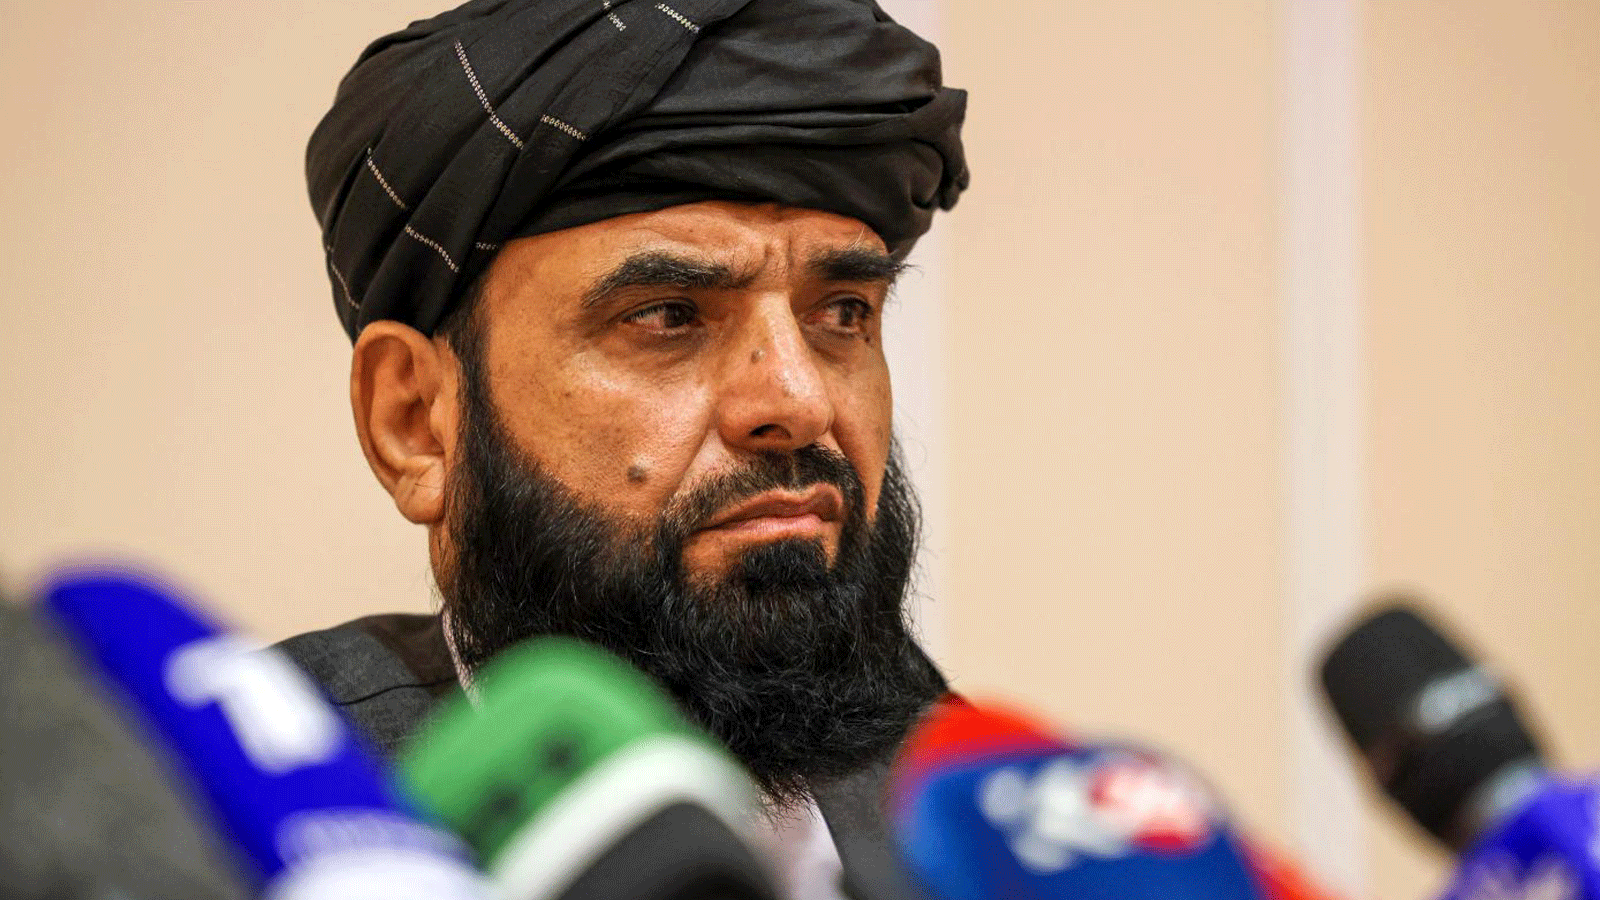 طالبان تريد الانتقال من “النقاش” إلى “التطبيق العملي” مع واشنطن